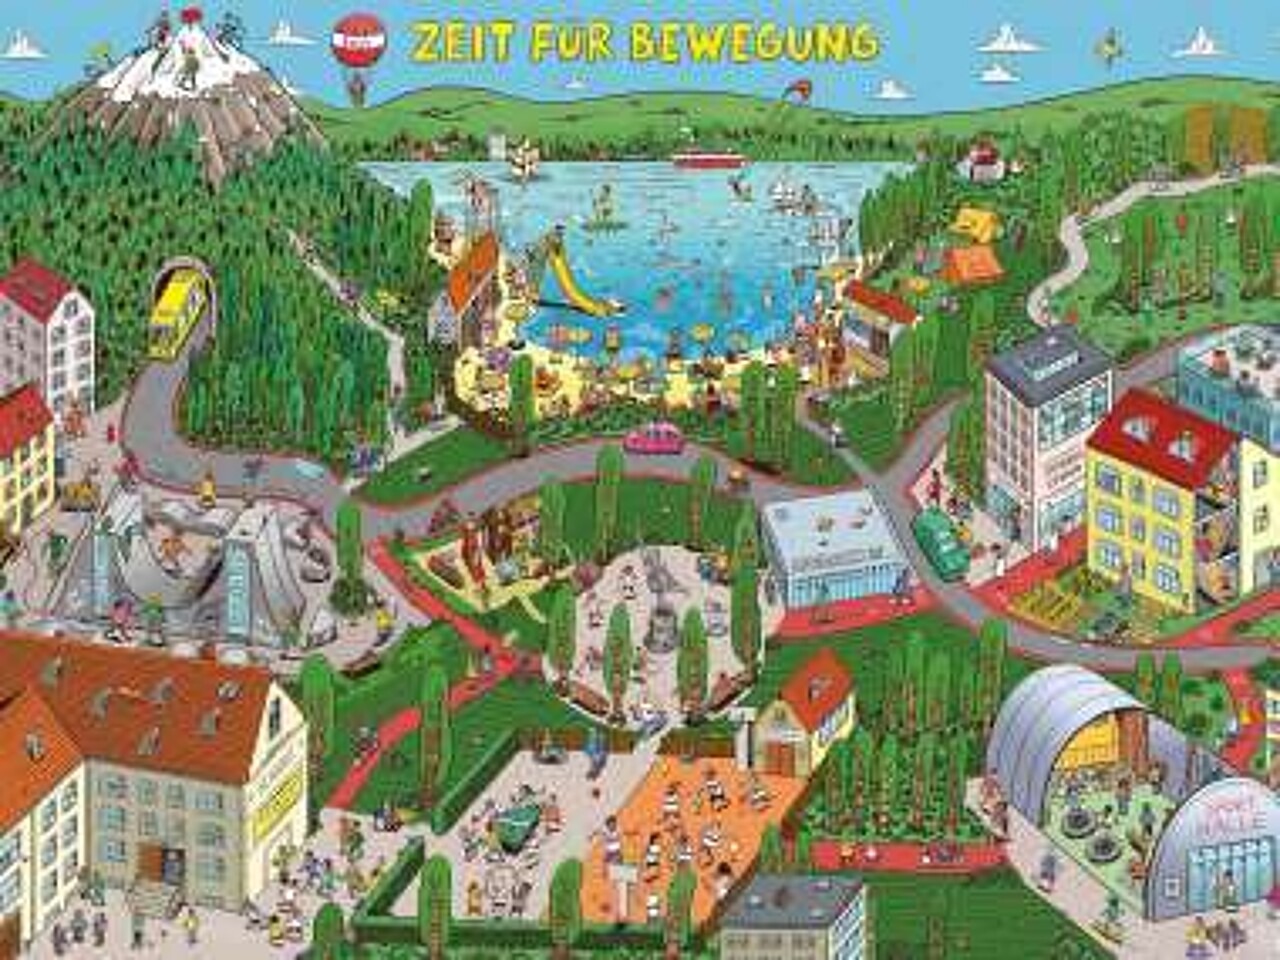 Das bunte Wimmelbild zeigt eine Stadt mit vielen Bewegungsmöglichkeiten in Häusern, auf Plätzen, im Park, auf einem Berg und an einem See.